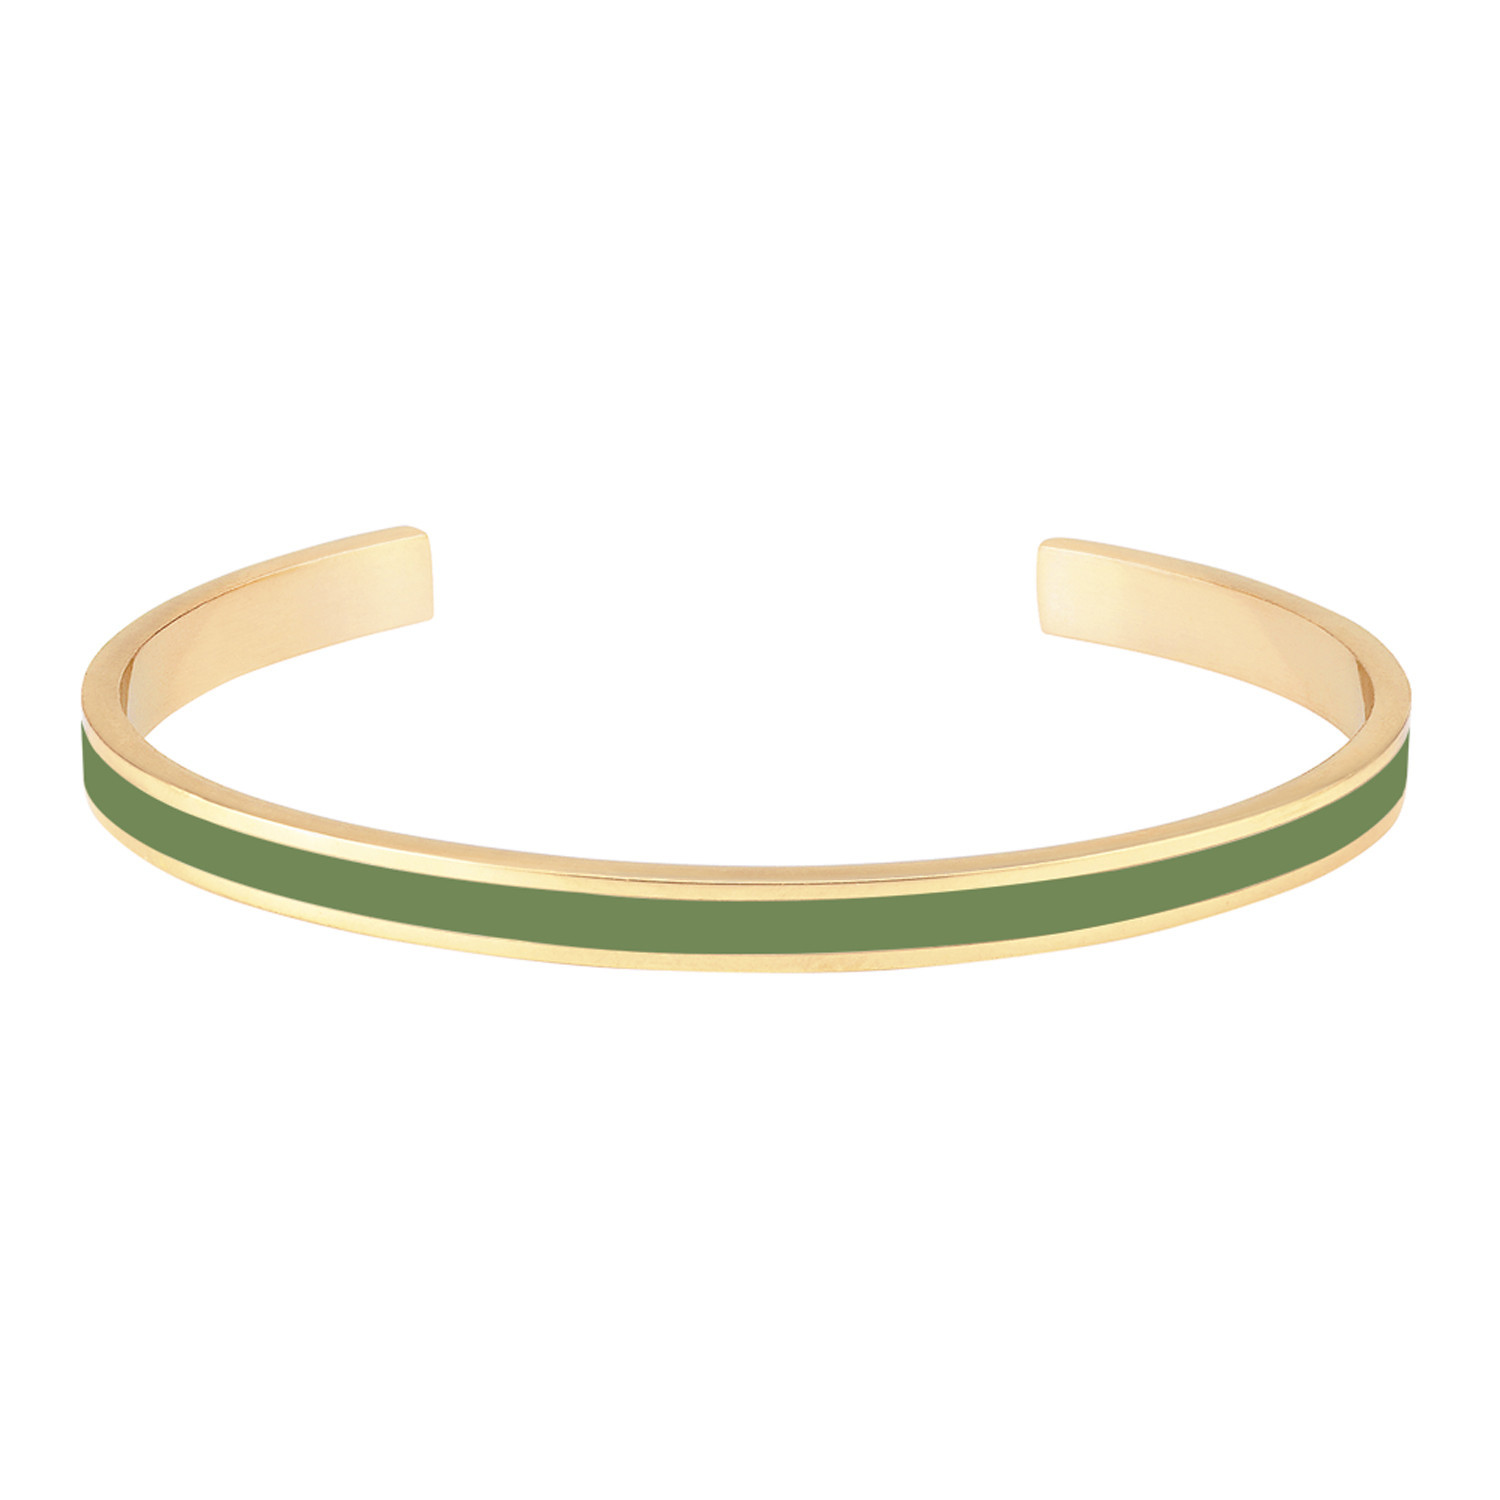 Bracelet jonc ouvert Bangle upémail vert kaki
collection Bangle 0. 44 cm